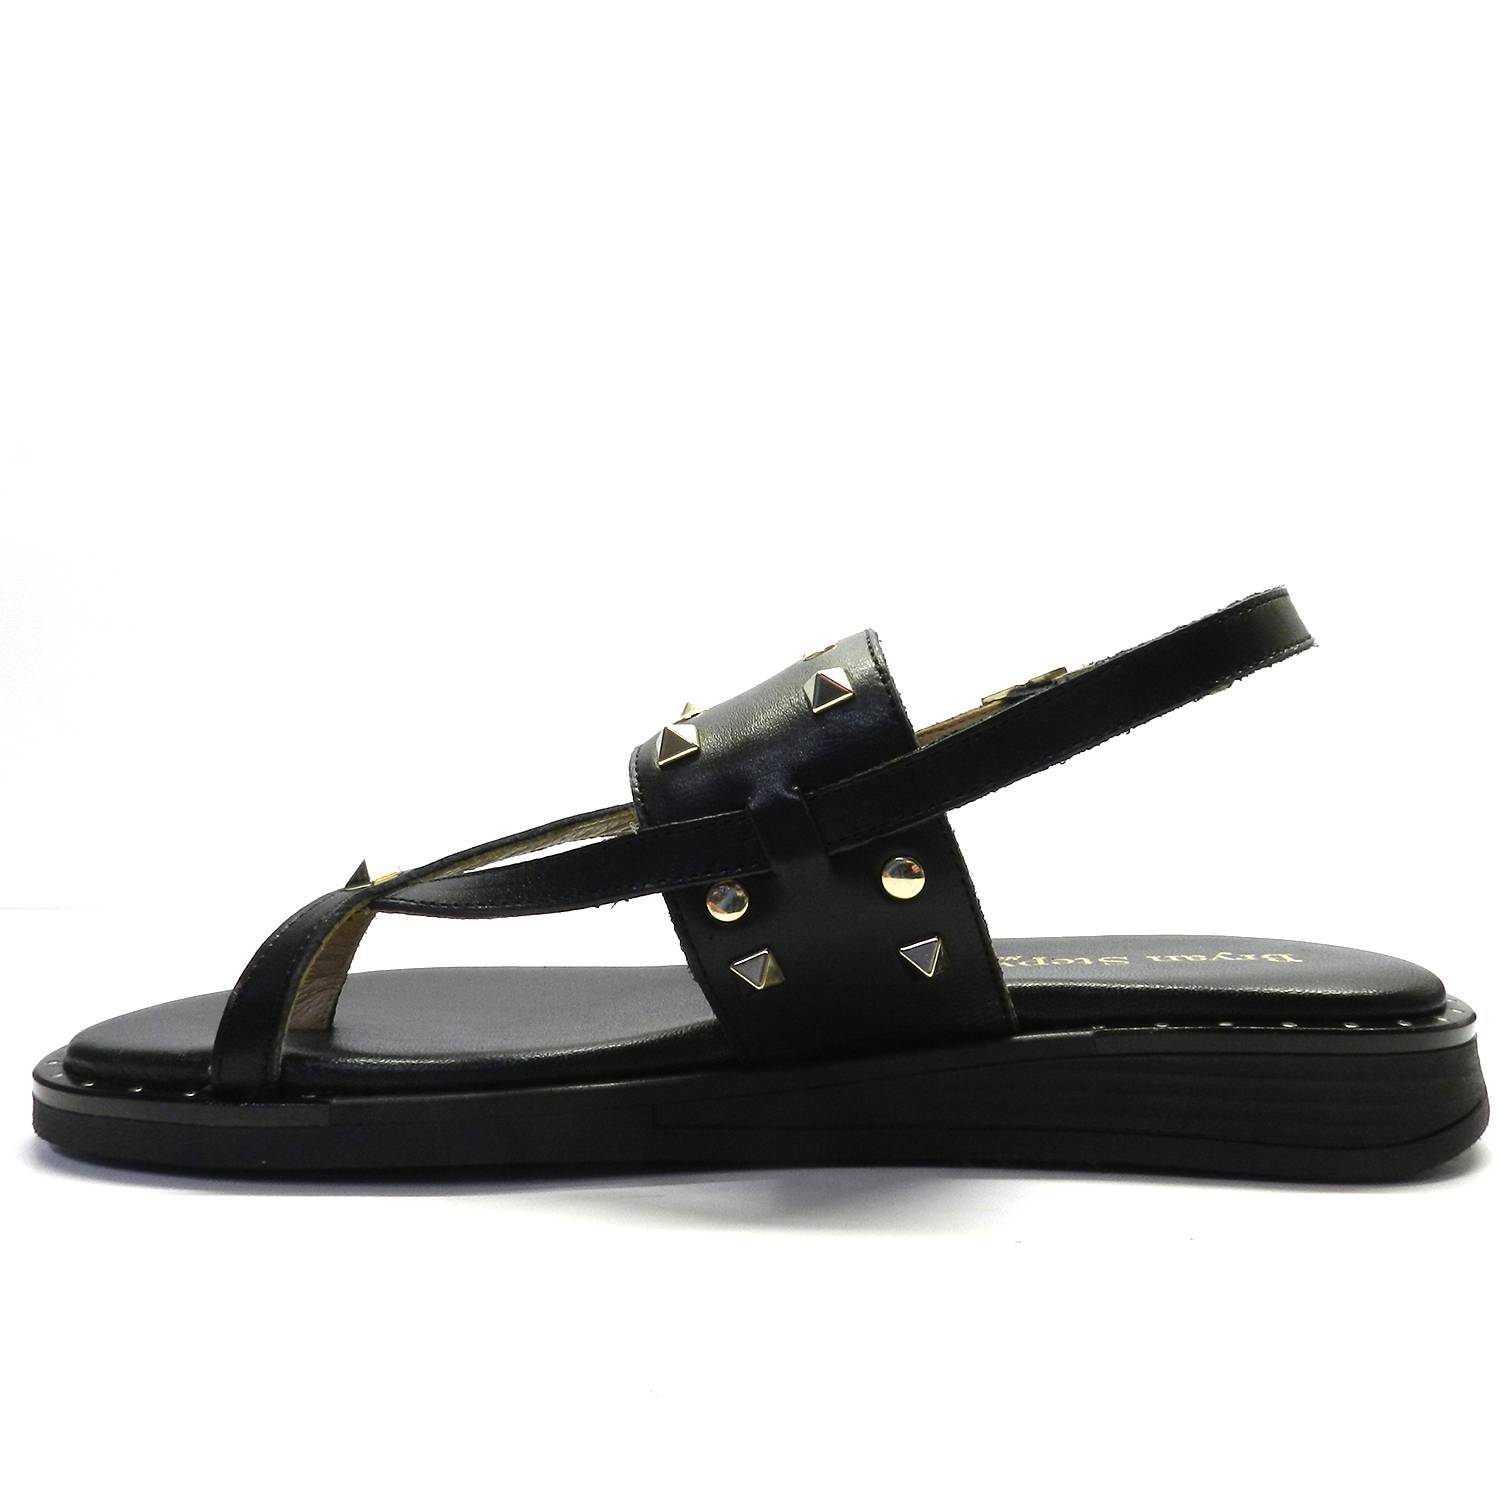 Sandalia de la marca Bryan Stepwise modelo 4502 en color negro. Sandalia plana de piel en negro con tachuelas y aro en el dedo.